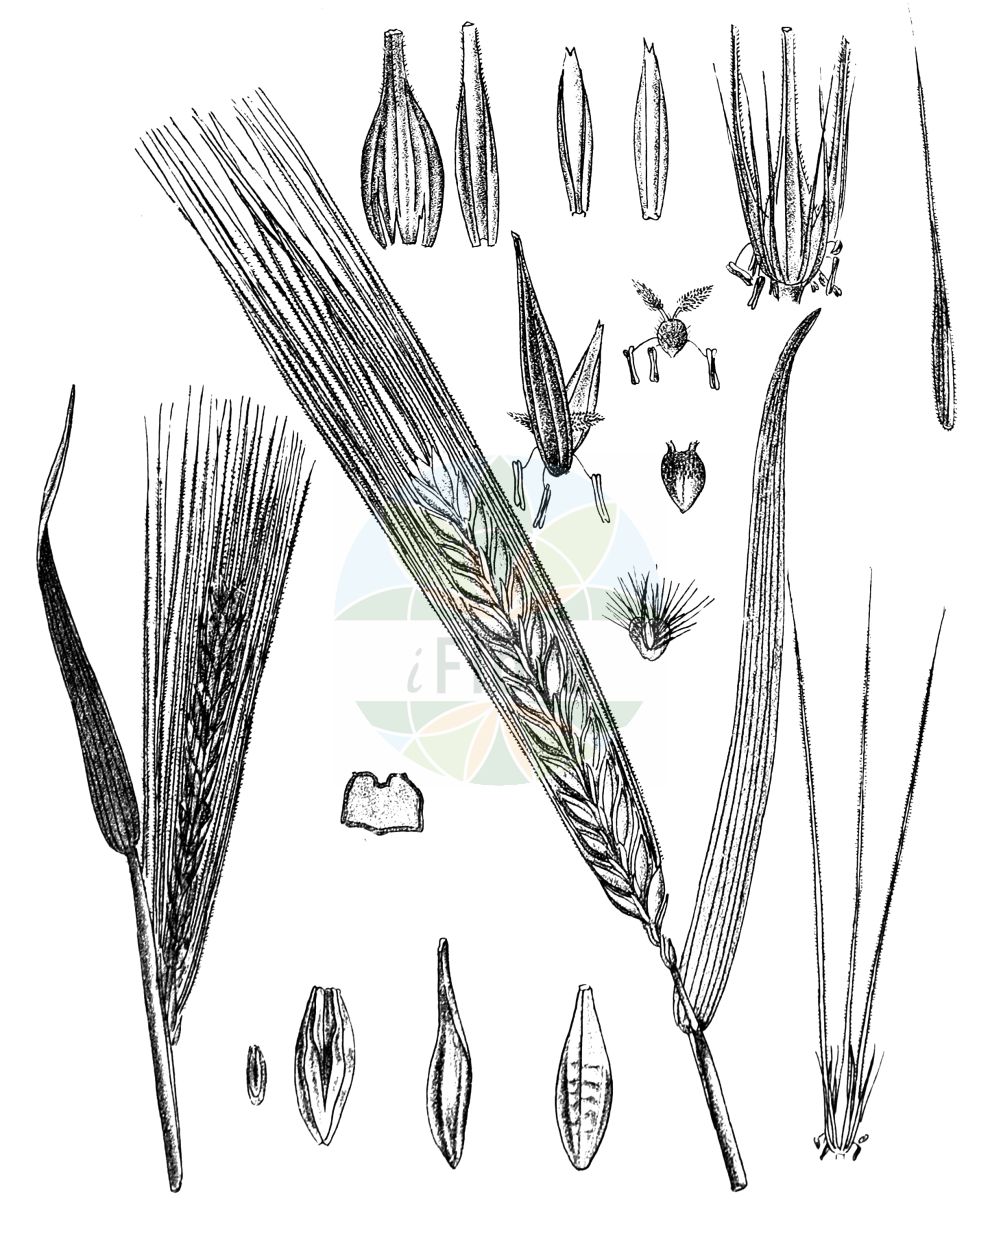 Historische Abbildung von Hordeum vulgare (Saat-Gerste - Six-rowed Barley). Das Bild zeigt Blatt, Bluete, Frucht und Same. ---- Historical Drawing of Hordeum vulgare (Saat-Gerste - Six-rowed Barley). The image is showing leaf, flower, fruit and seed.(Hordeum vulgare,Saat-Gerste,Six-rowed Barley,Hordeum hexastichum,Hordeum polystichon,Hordeum vulgare,Hordeum vulgare subsp. hexastichon,Saat-Gerste,Mehrzeilige Gerste,Six-rowed Barley,Barley,Common Barley,Six-row Barley,Four-rowed Barley,Hordeum,Gerste,Barley,Poaceae,Süßgräser,Grass family,Blatt,Bluete,Frucht,Same,leaf,flower,fruit,seed,Kirtikar & Basu (1918))